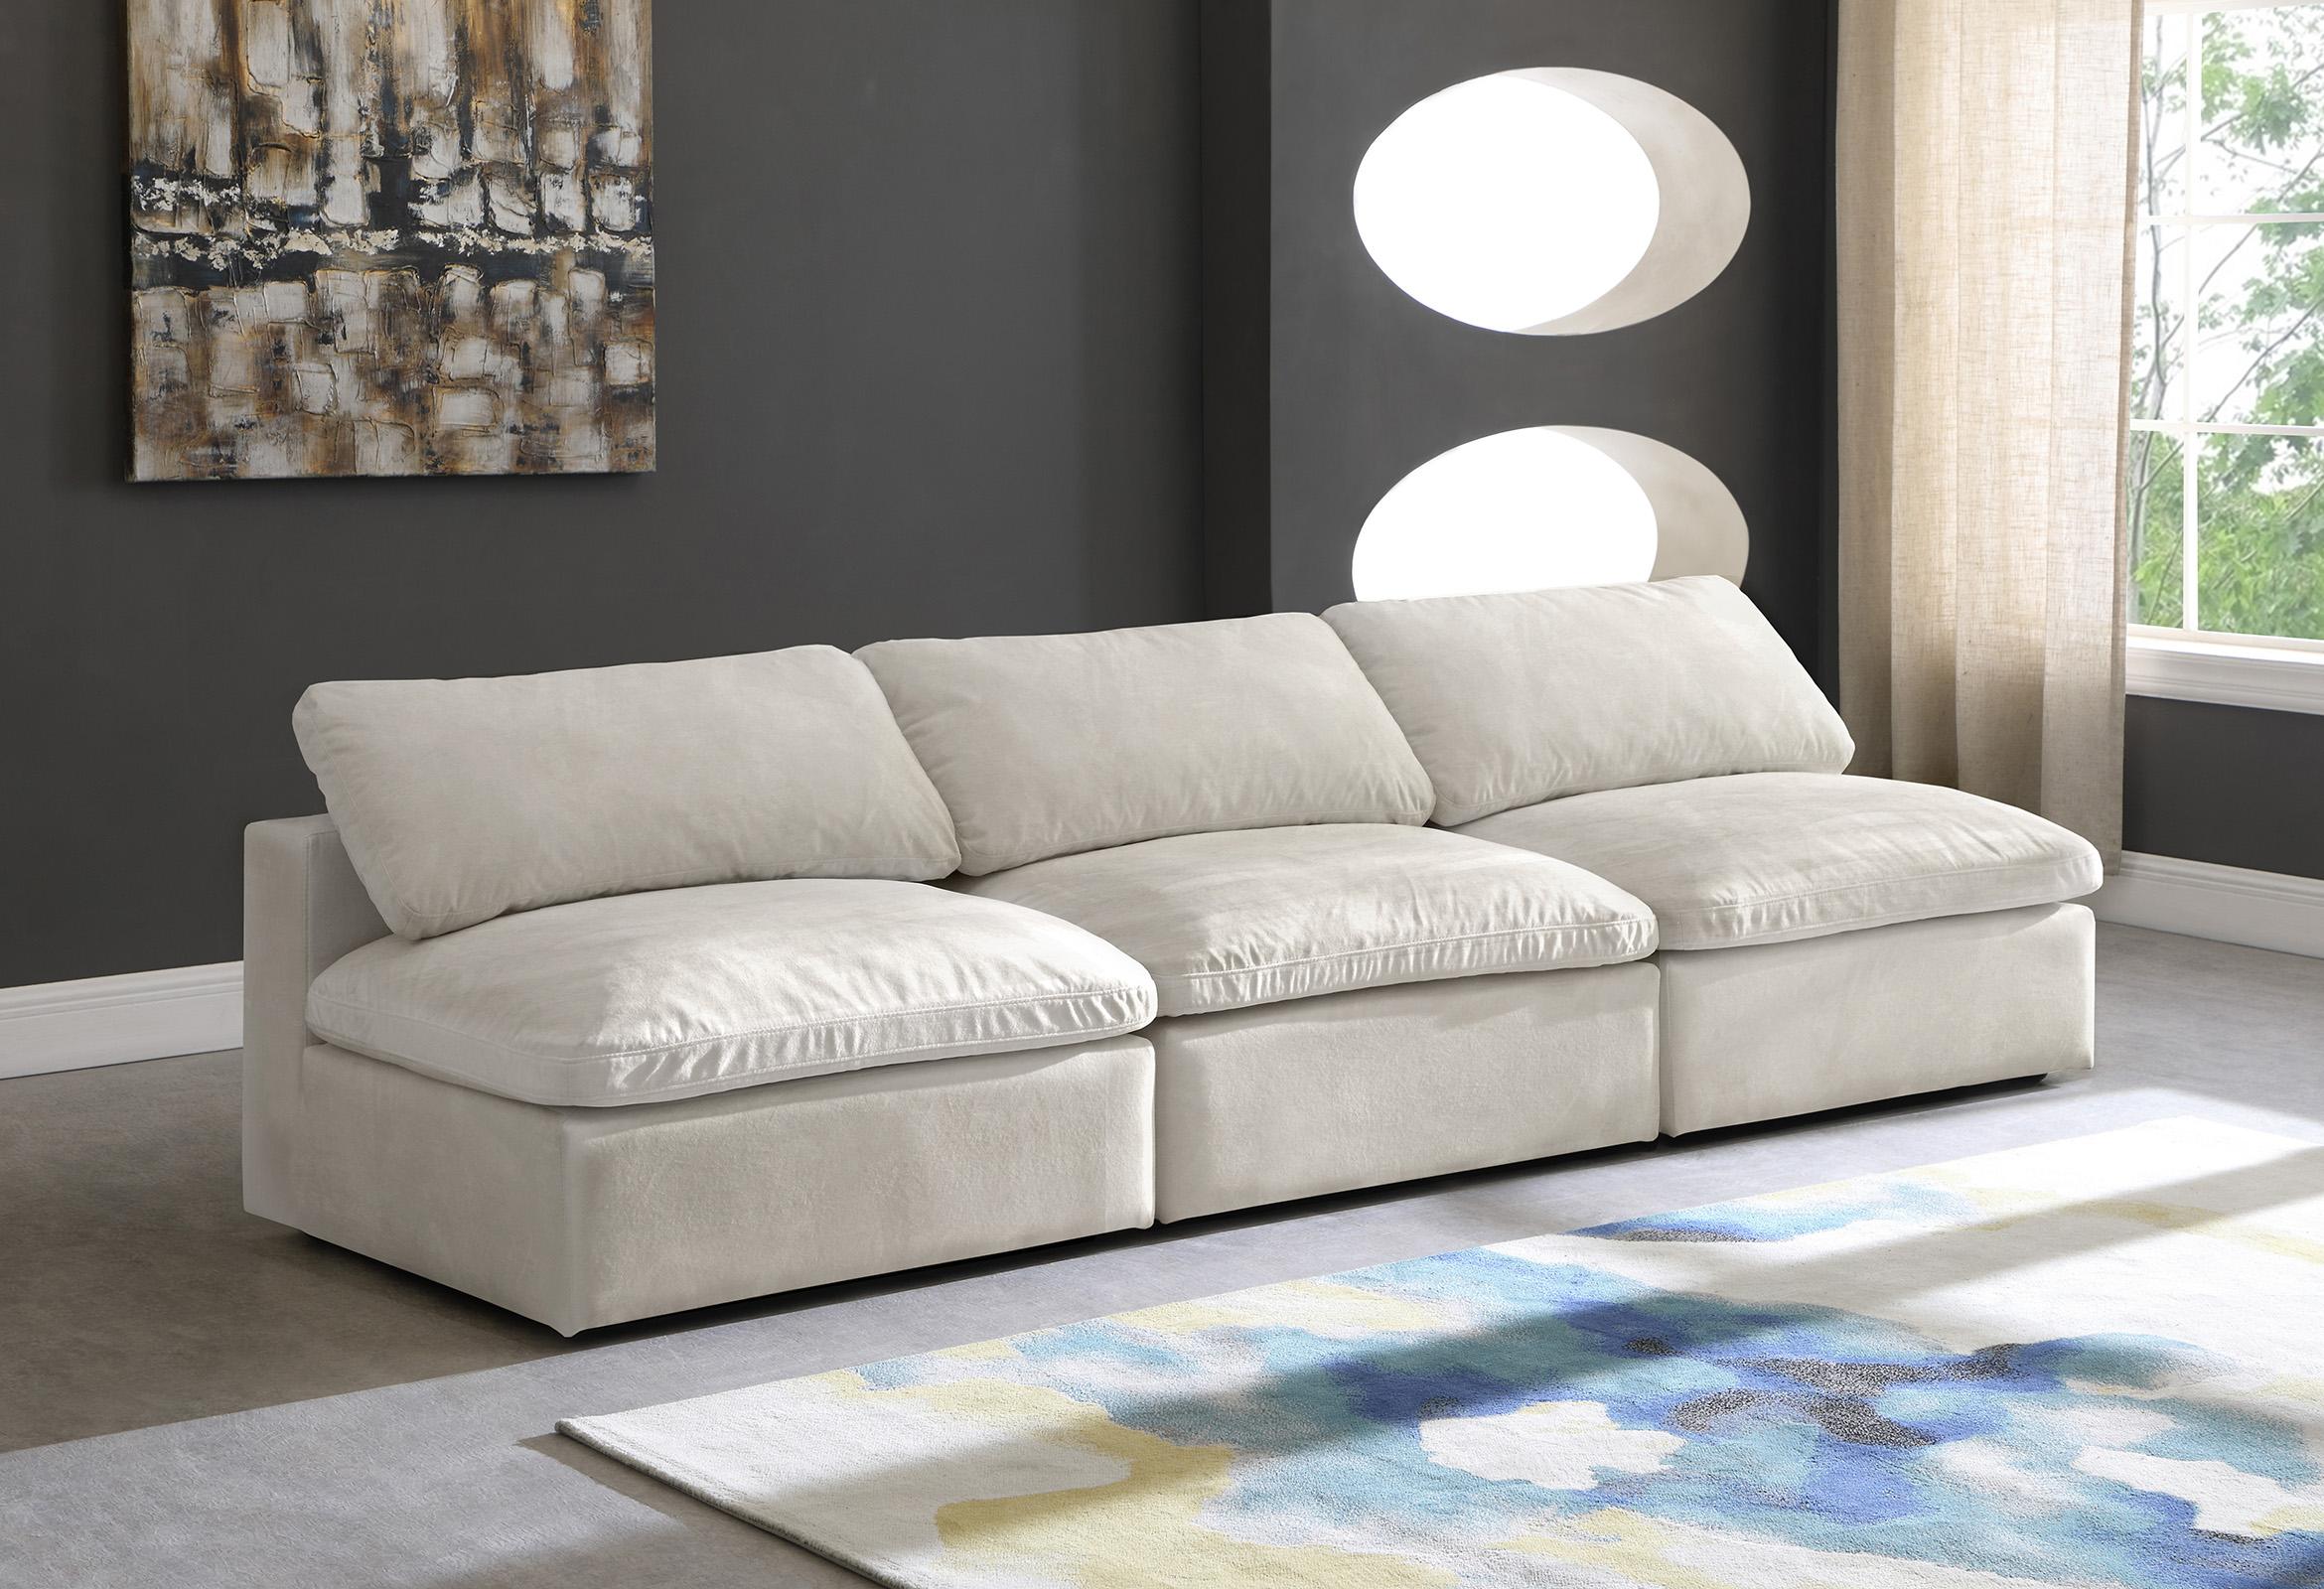 

    
Meridian Furniture 634Cream-S117 Modular Sofa Cream 634Cream-S117
